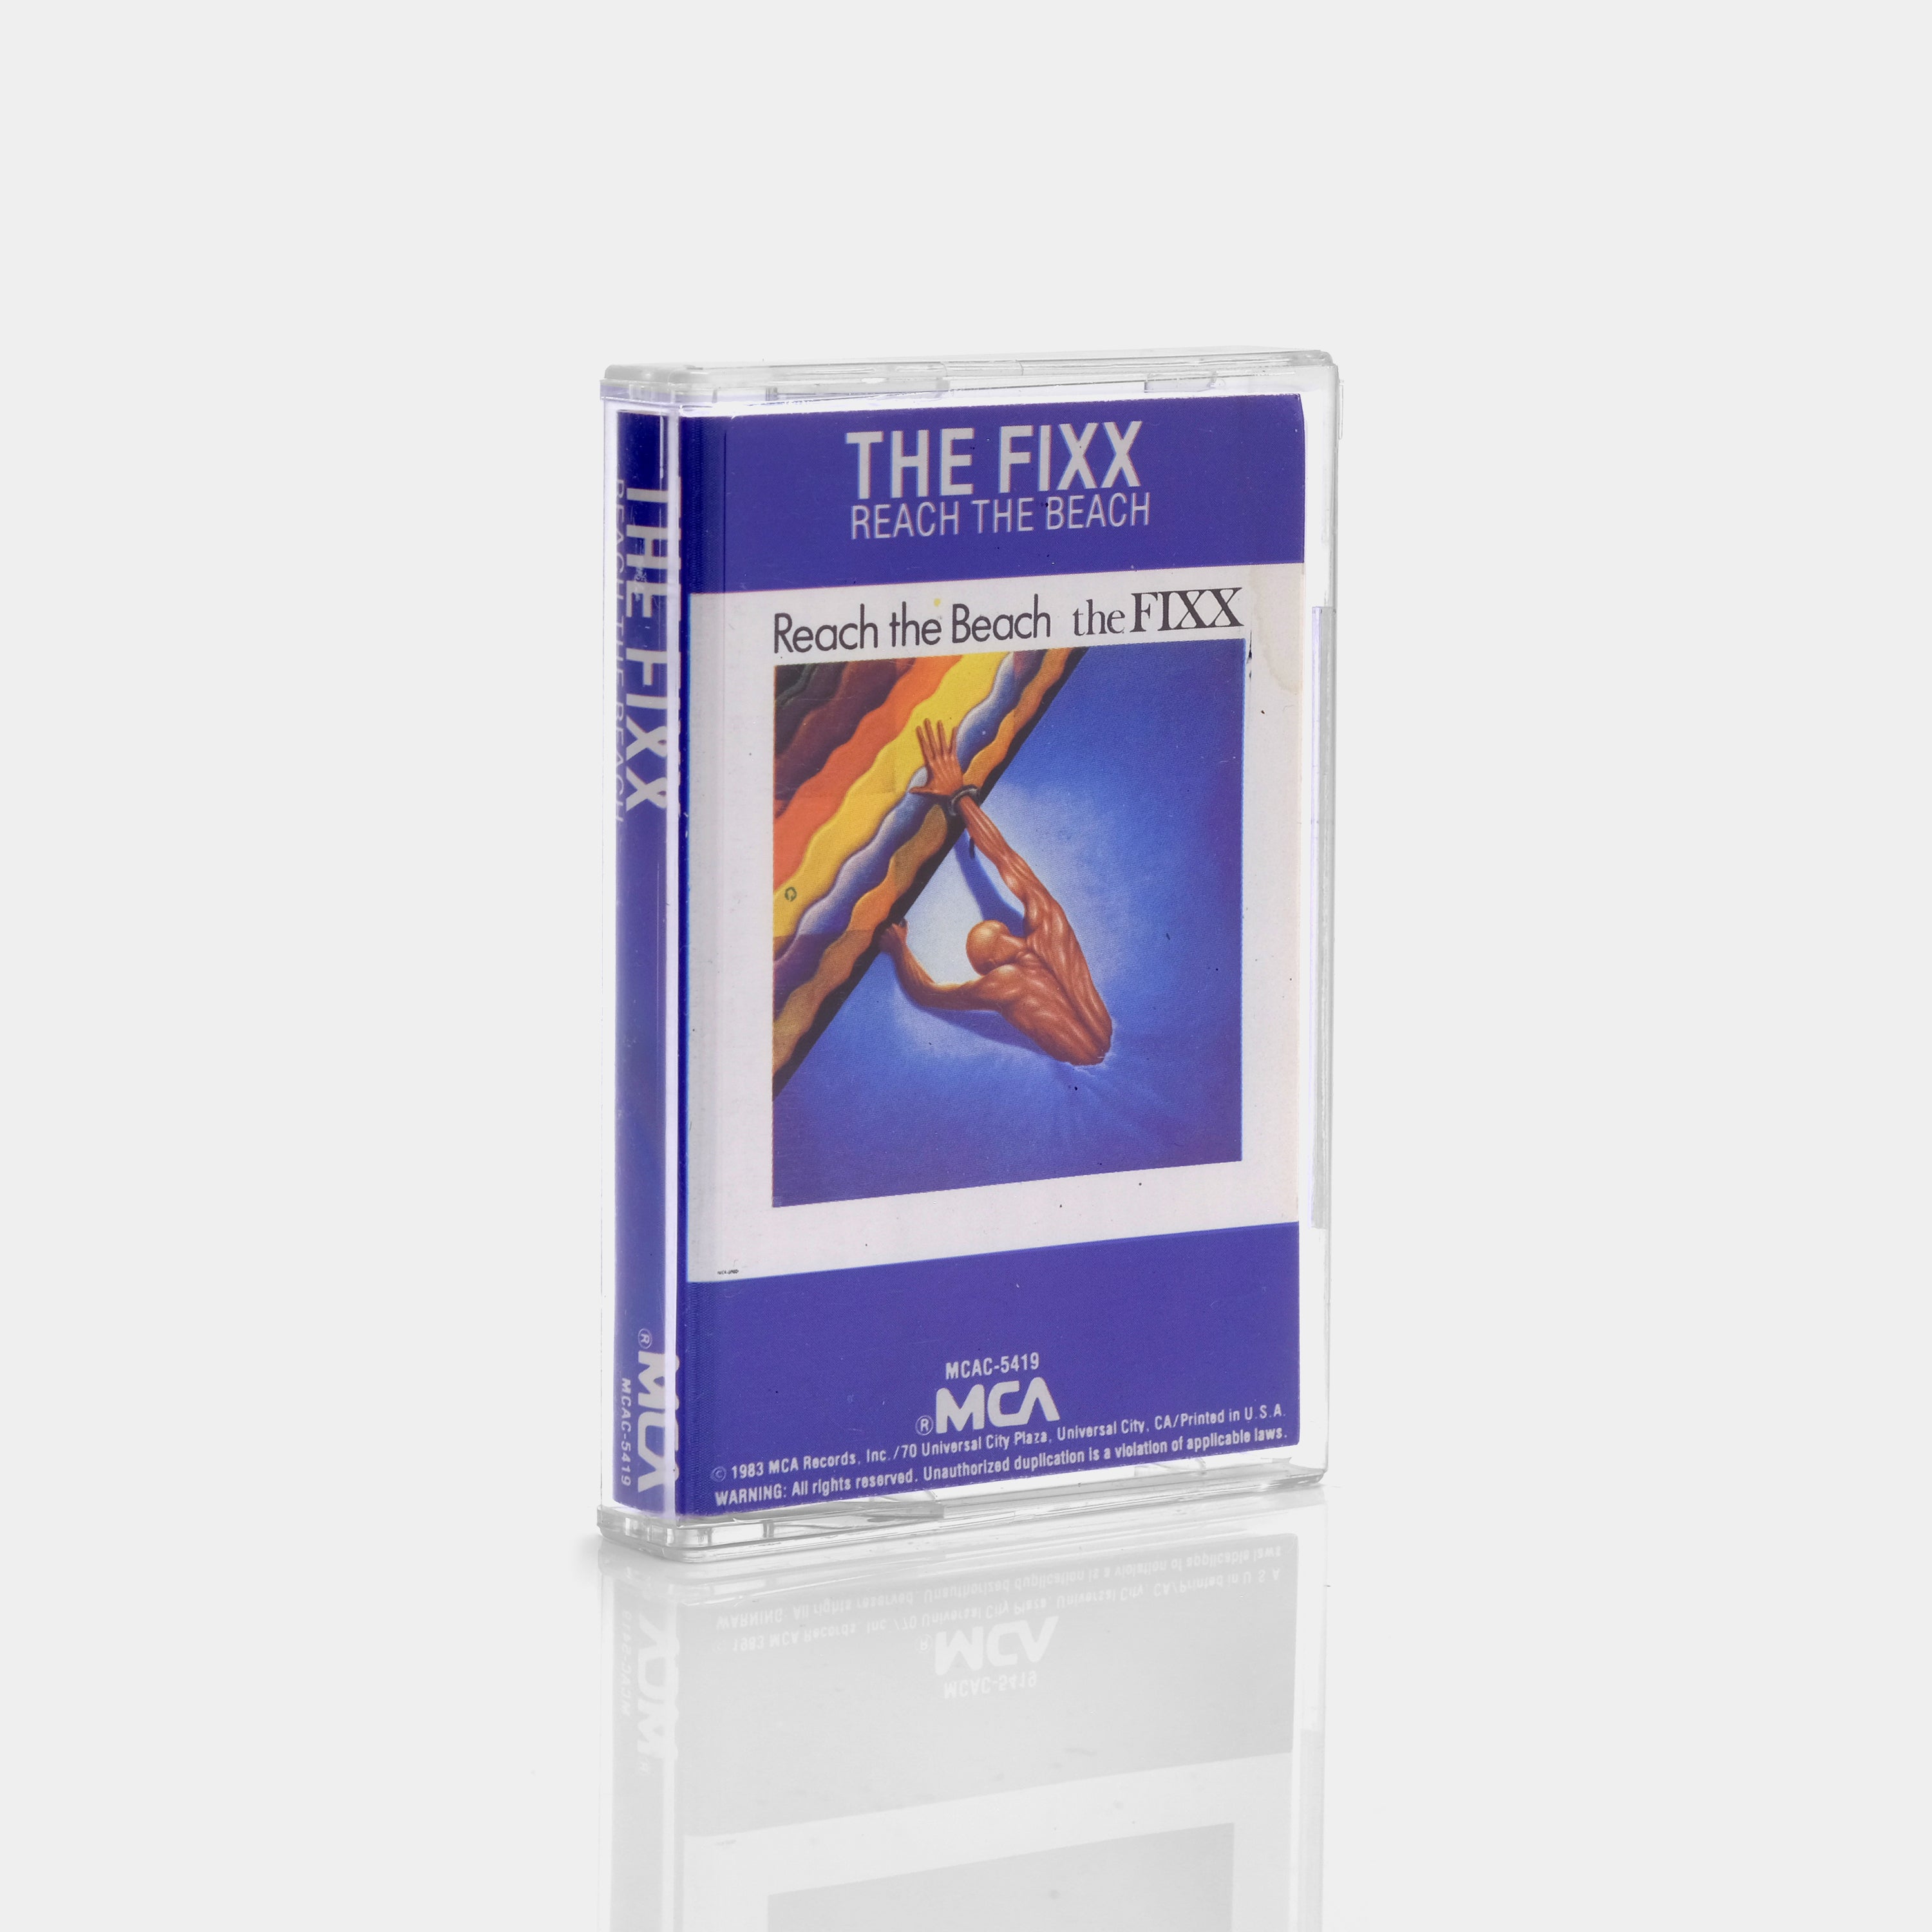 The Fixx - Reach The Beach Cassette Tape